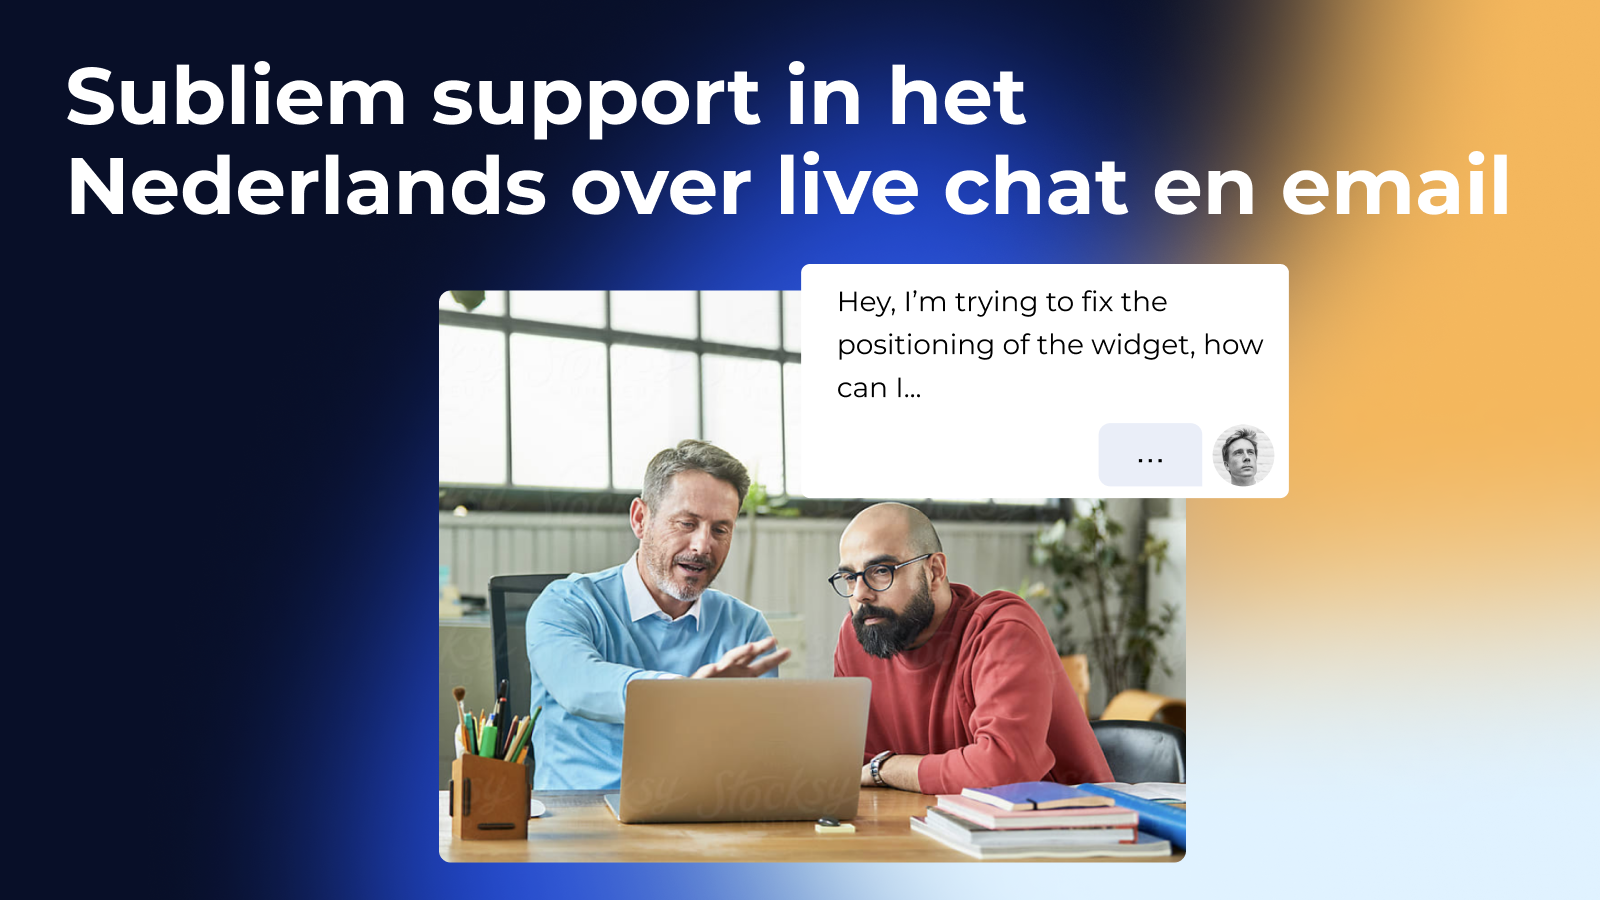 nederlands belgisch founding team, krijg support in jouw taal